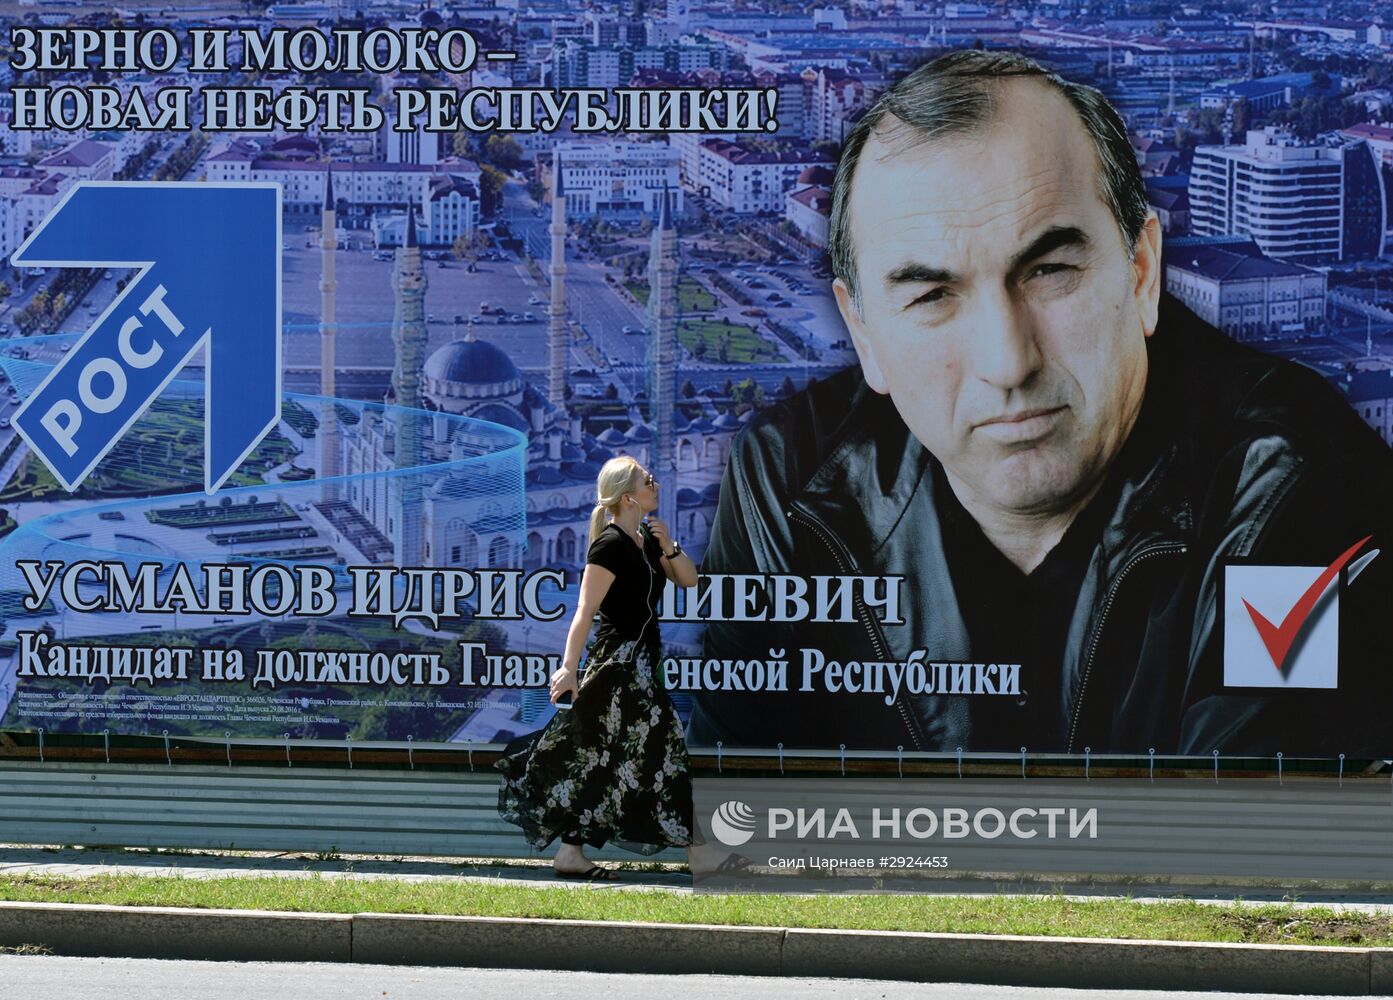 Предвыборная агитация в городах России